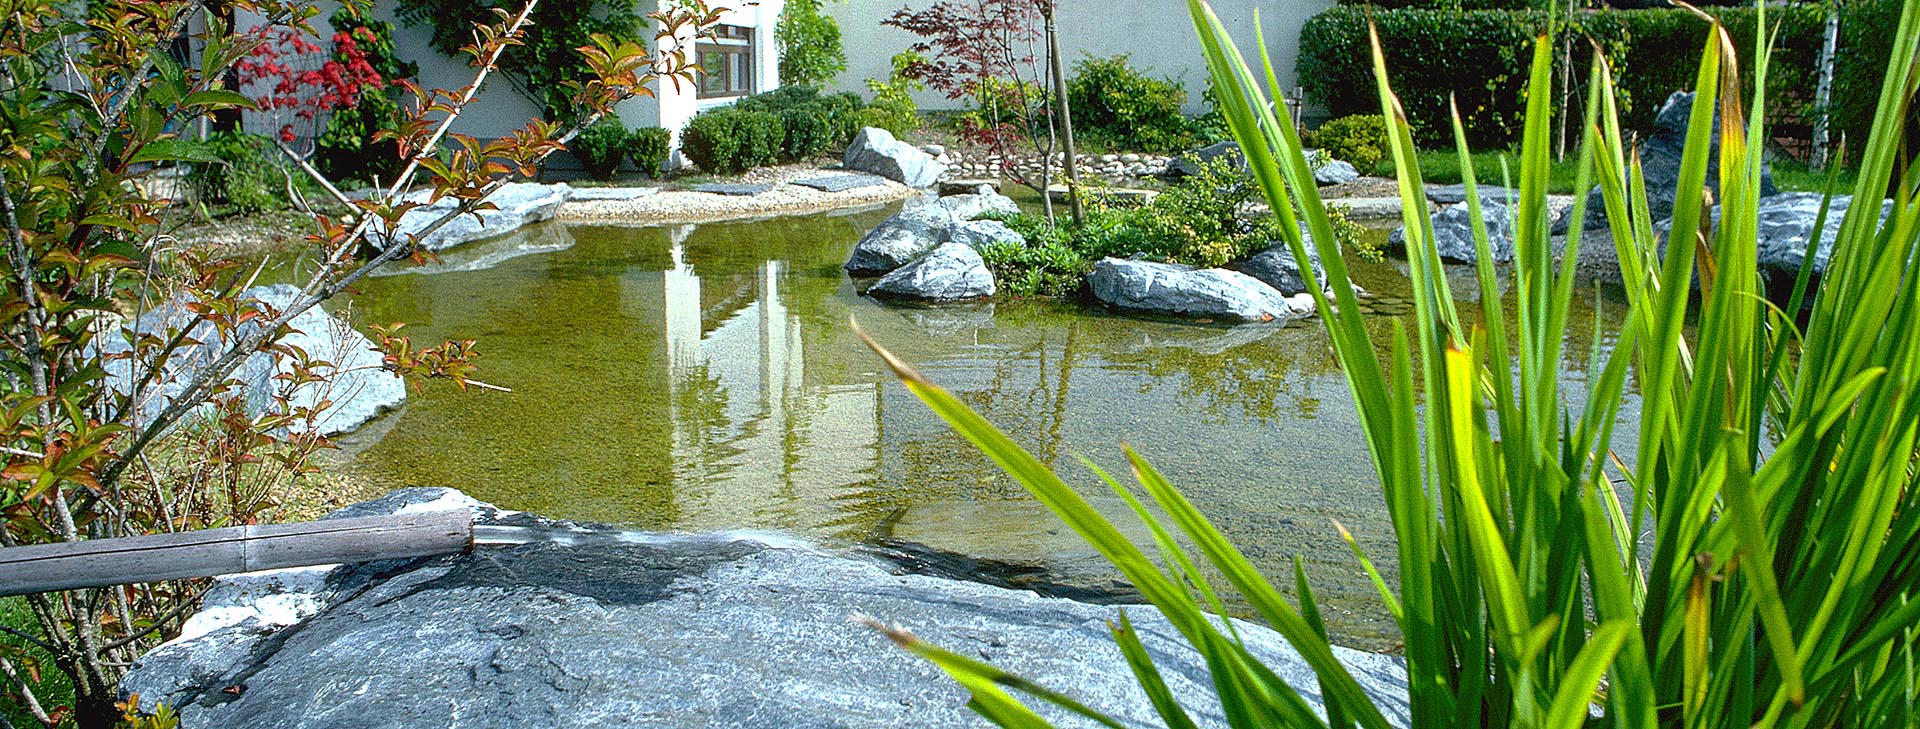 bassin miroir esprit zen création jardin japonais